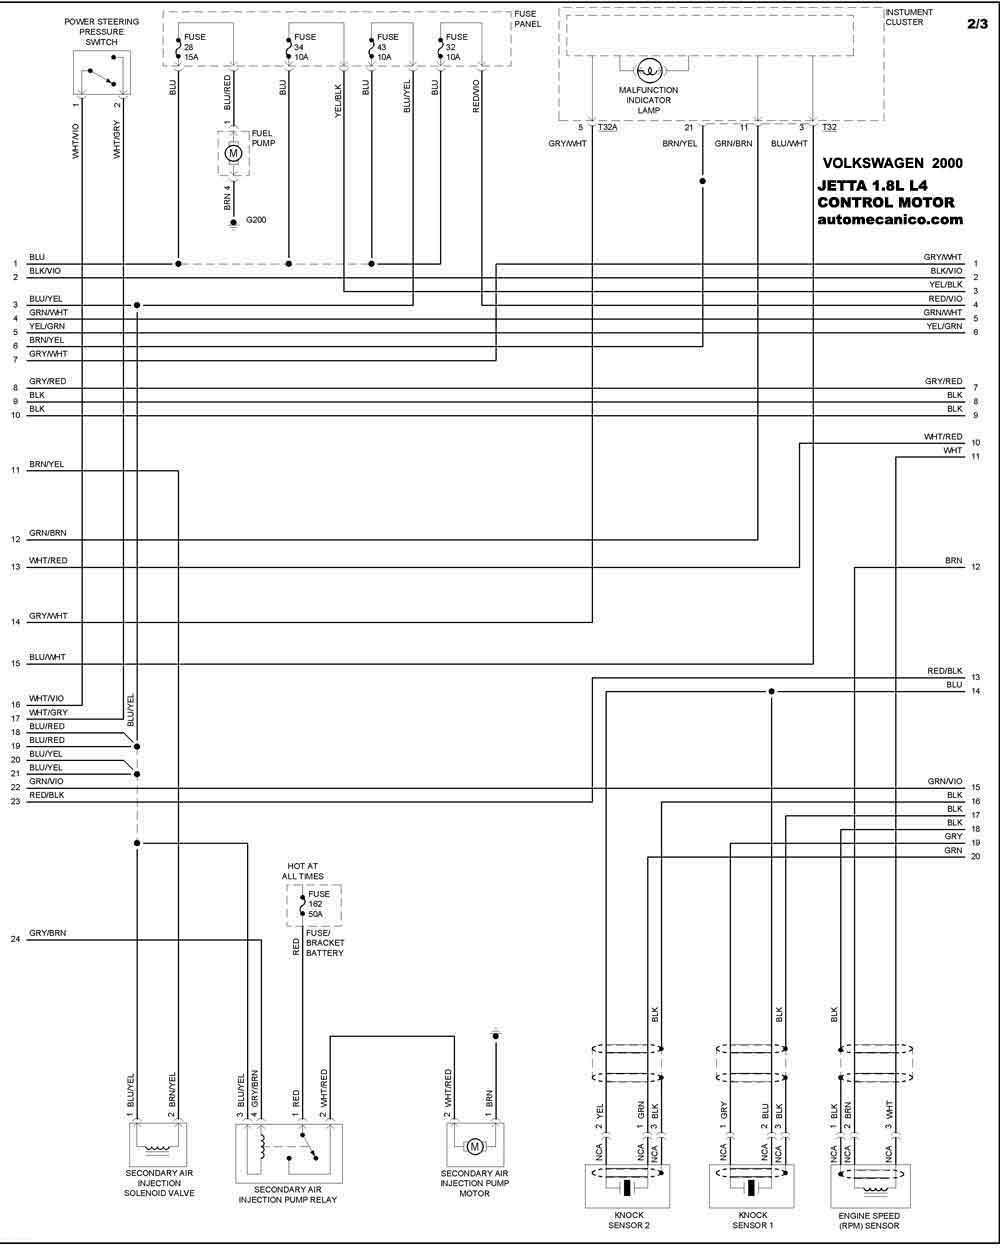 VOLKSWAGEN 2000 - Diagramas control del motor - Graphics - Esquemas